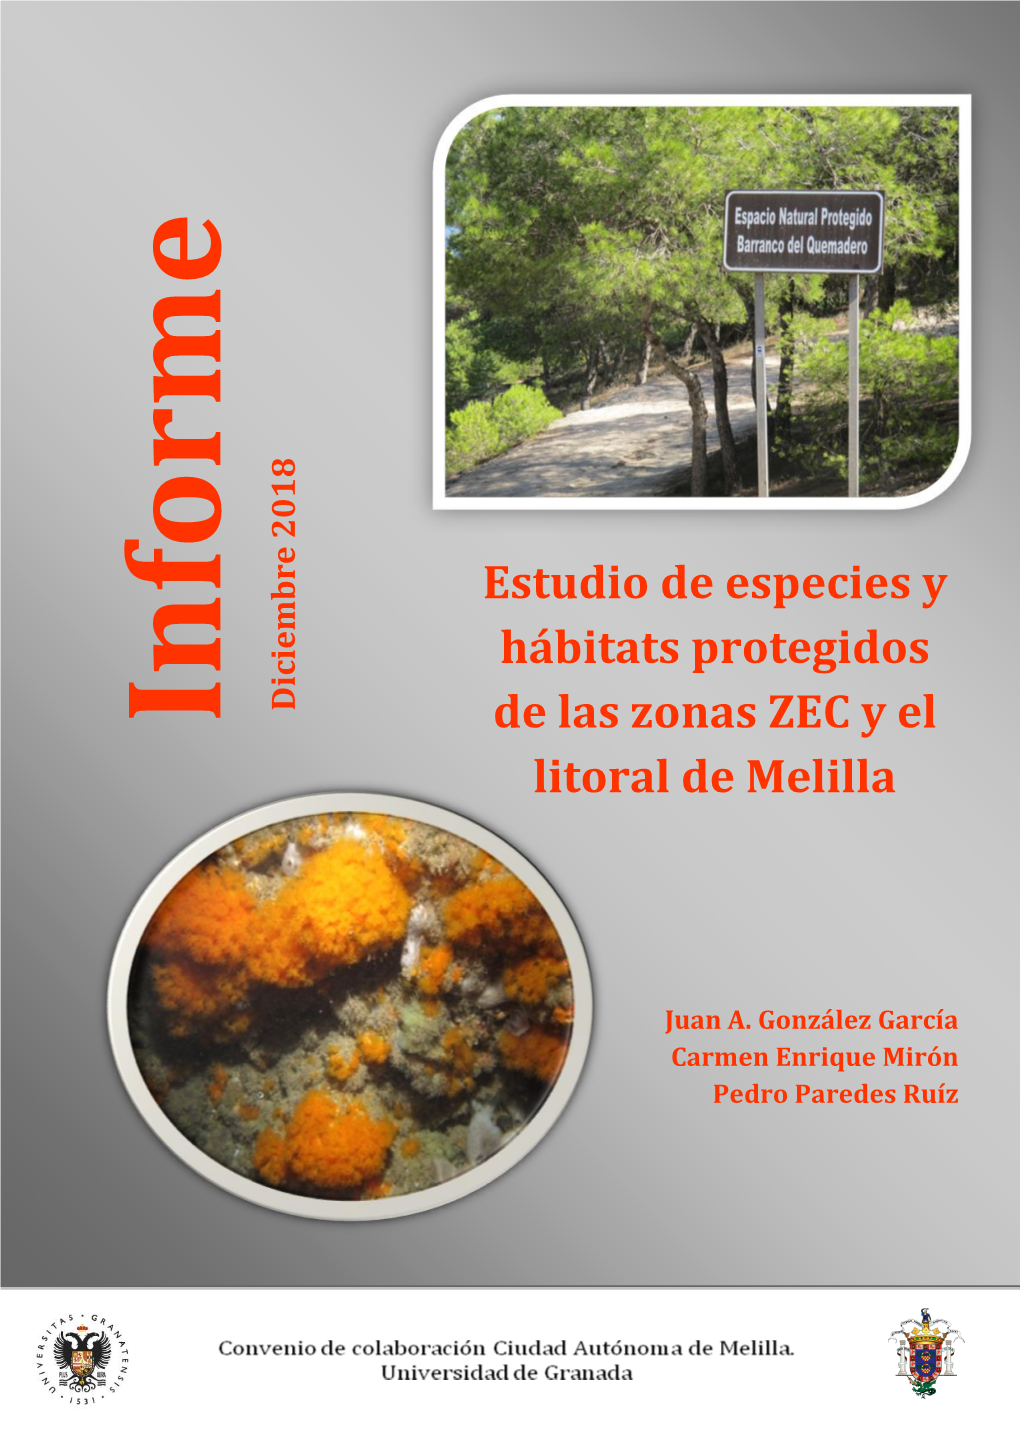 Estudio De Especies Y Hábitats Protegidos De La Zonas ZEC Y El Litoral